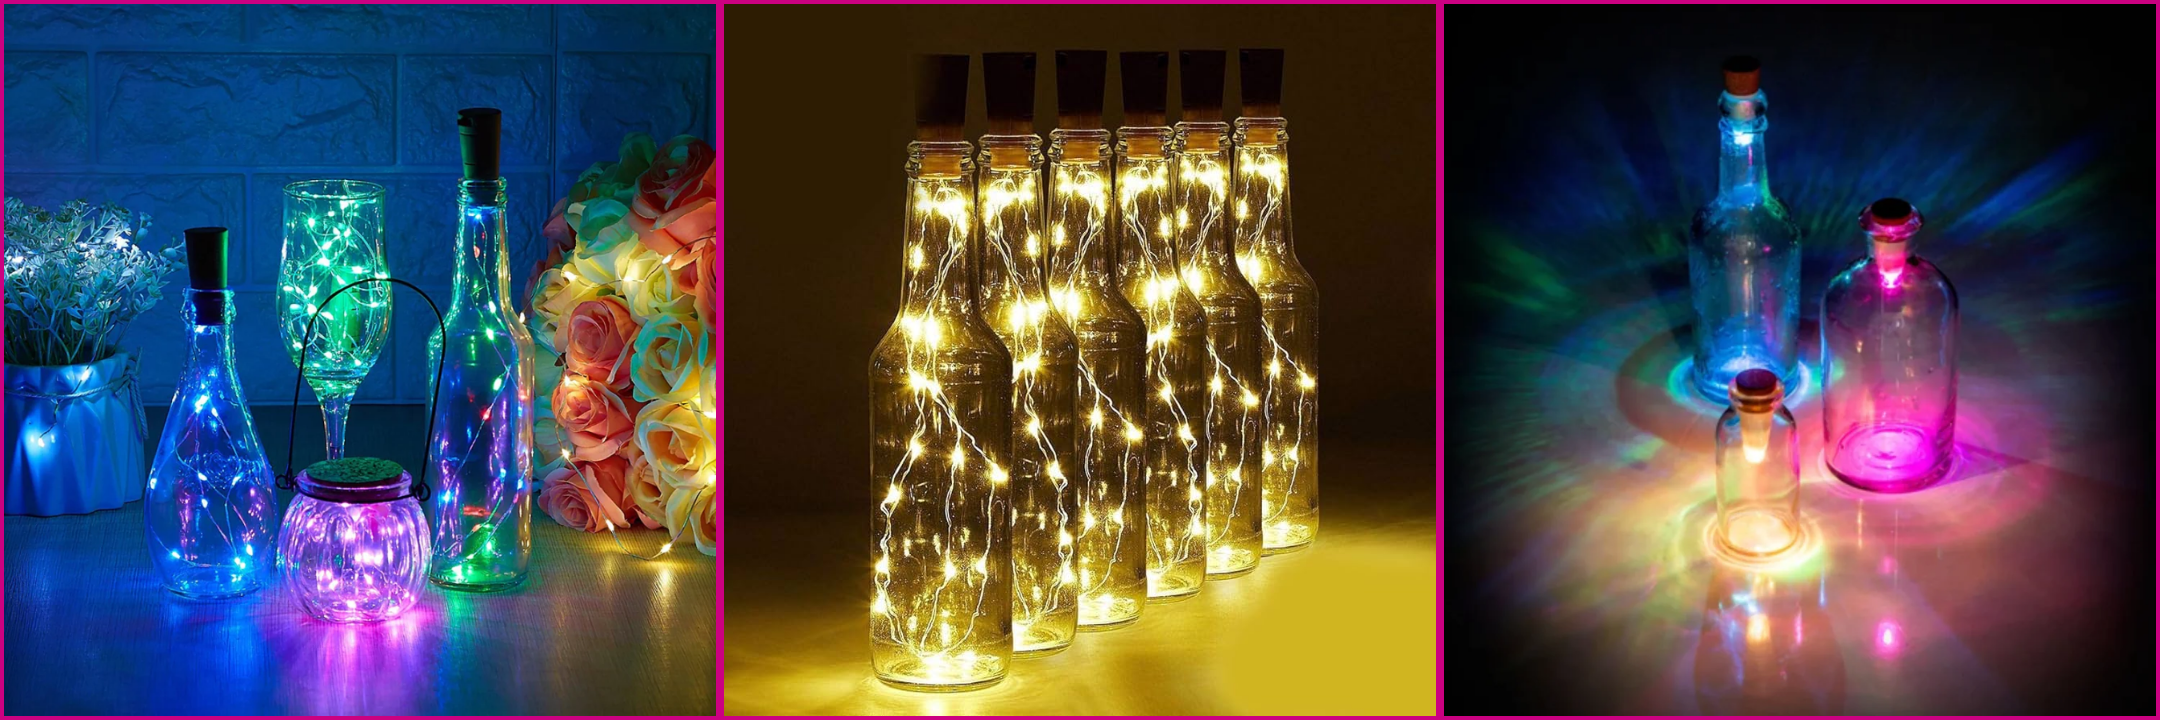 Wine bottle cork led light for Diwali decoration